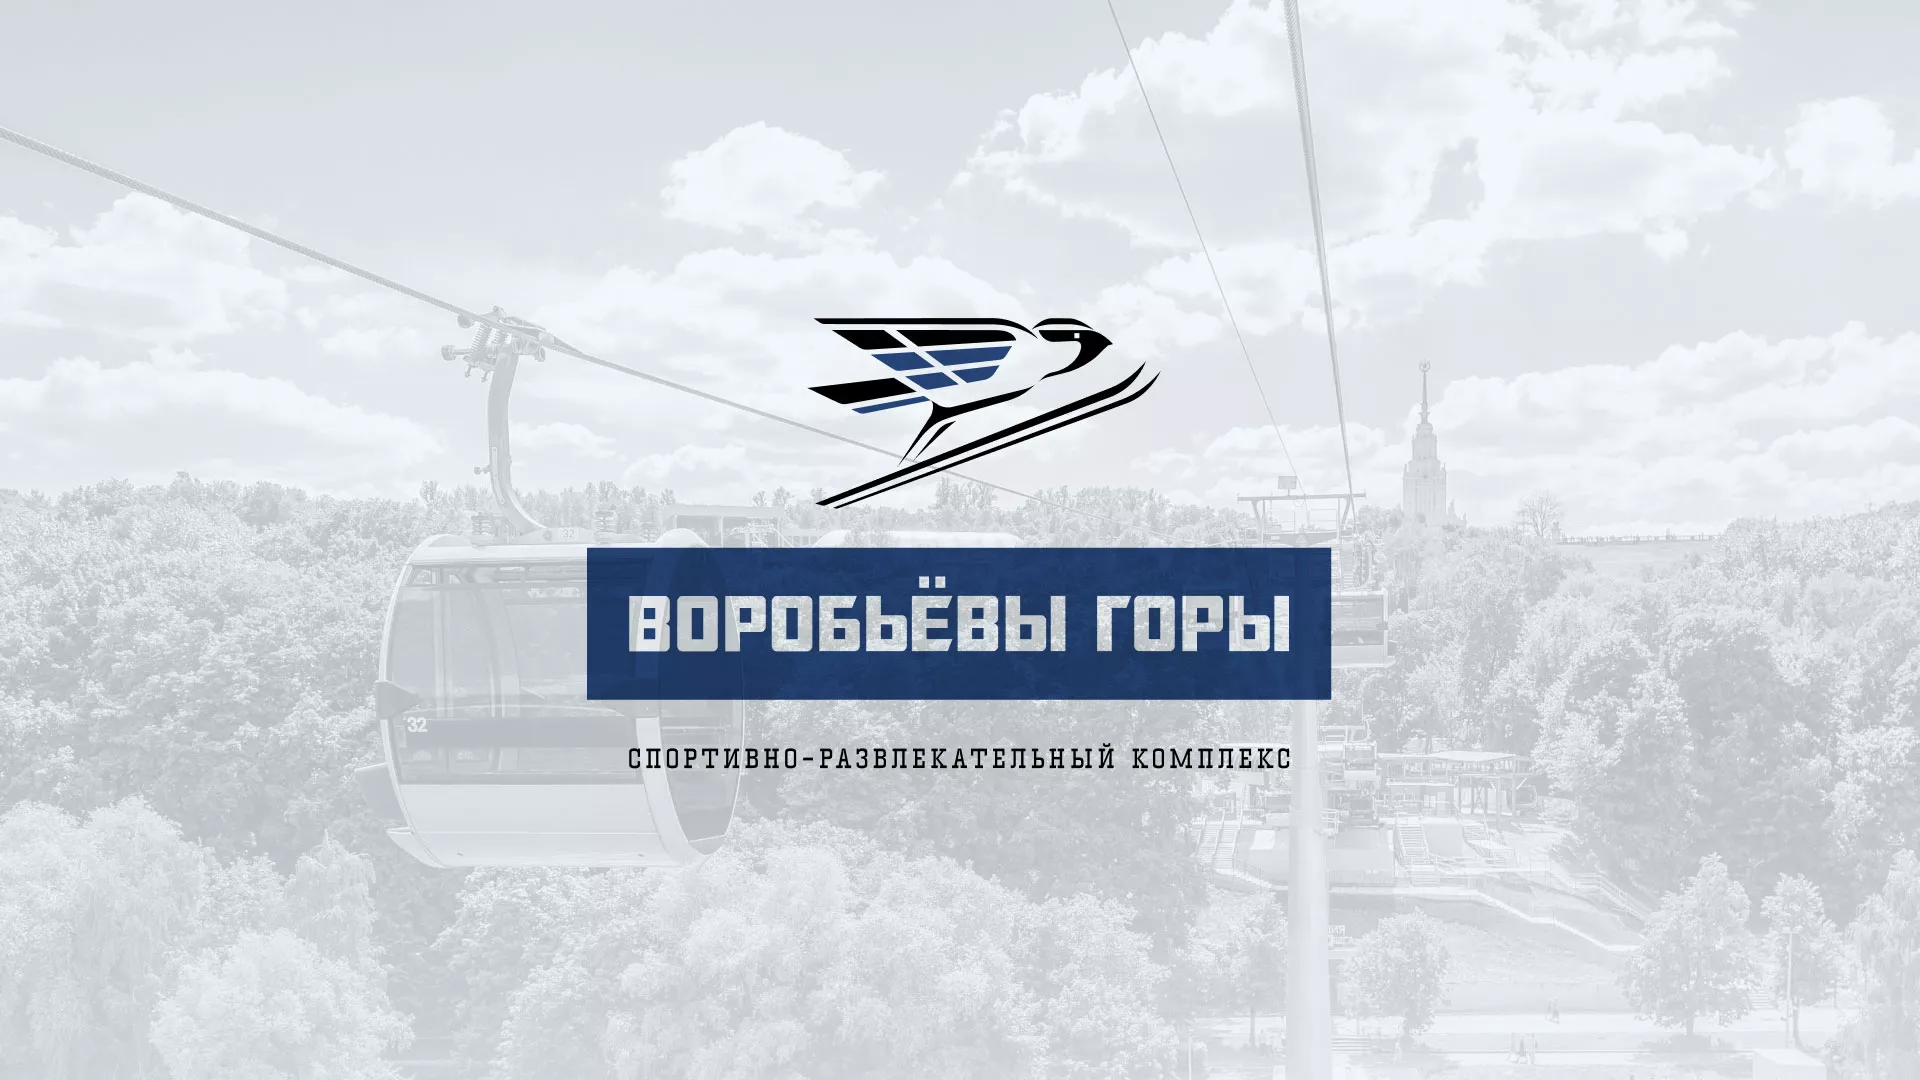 Разработка сайта в Иваново для спортивно-развлекательного комплекса «Воробьёвы горы»